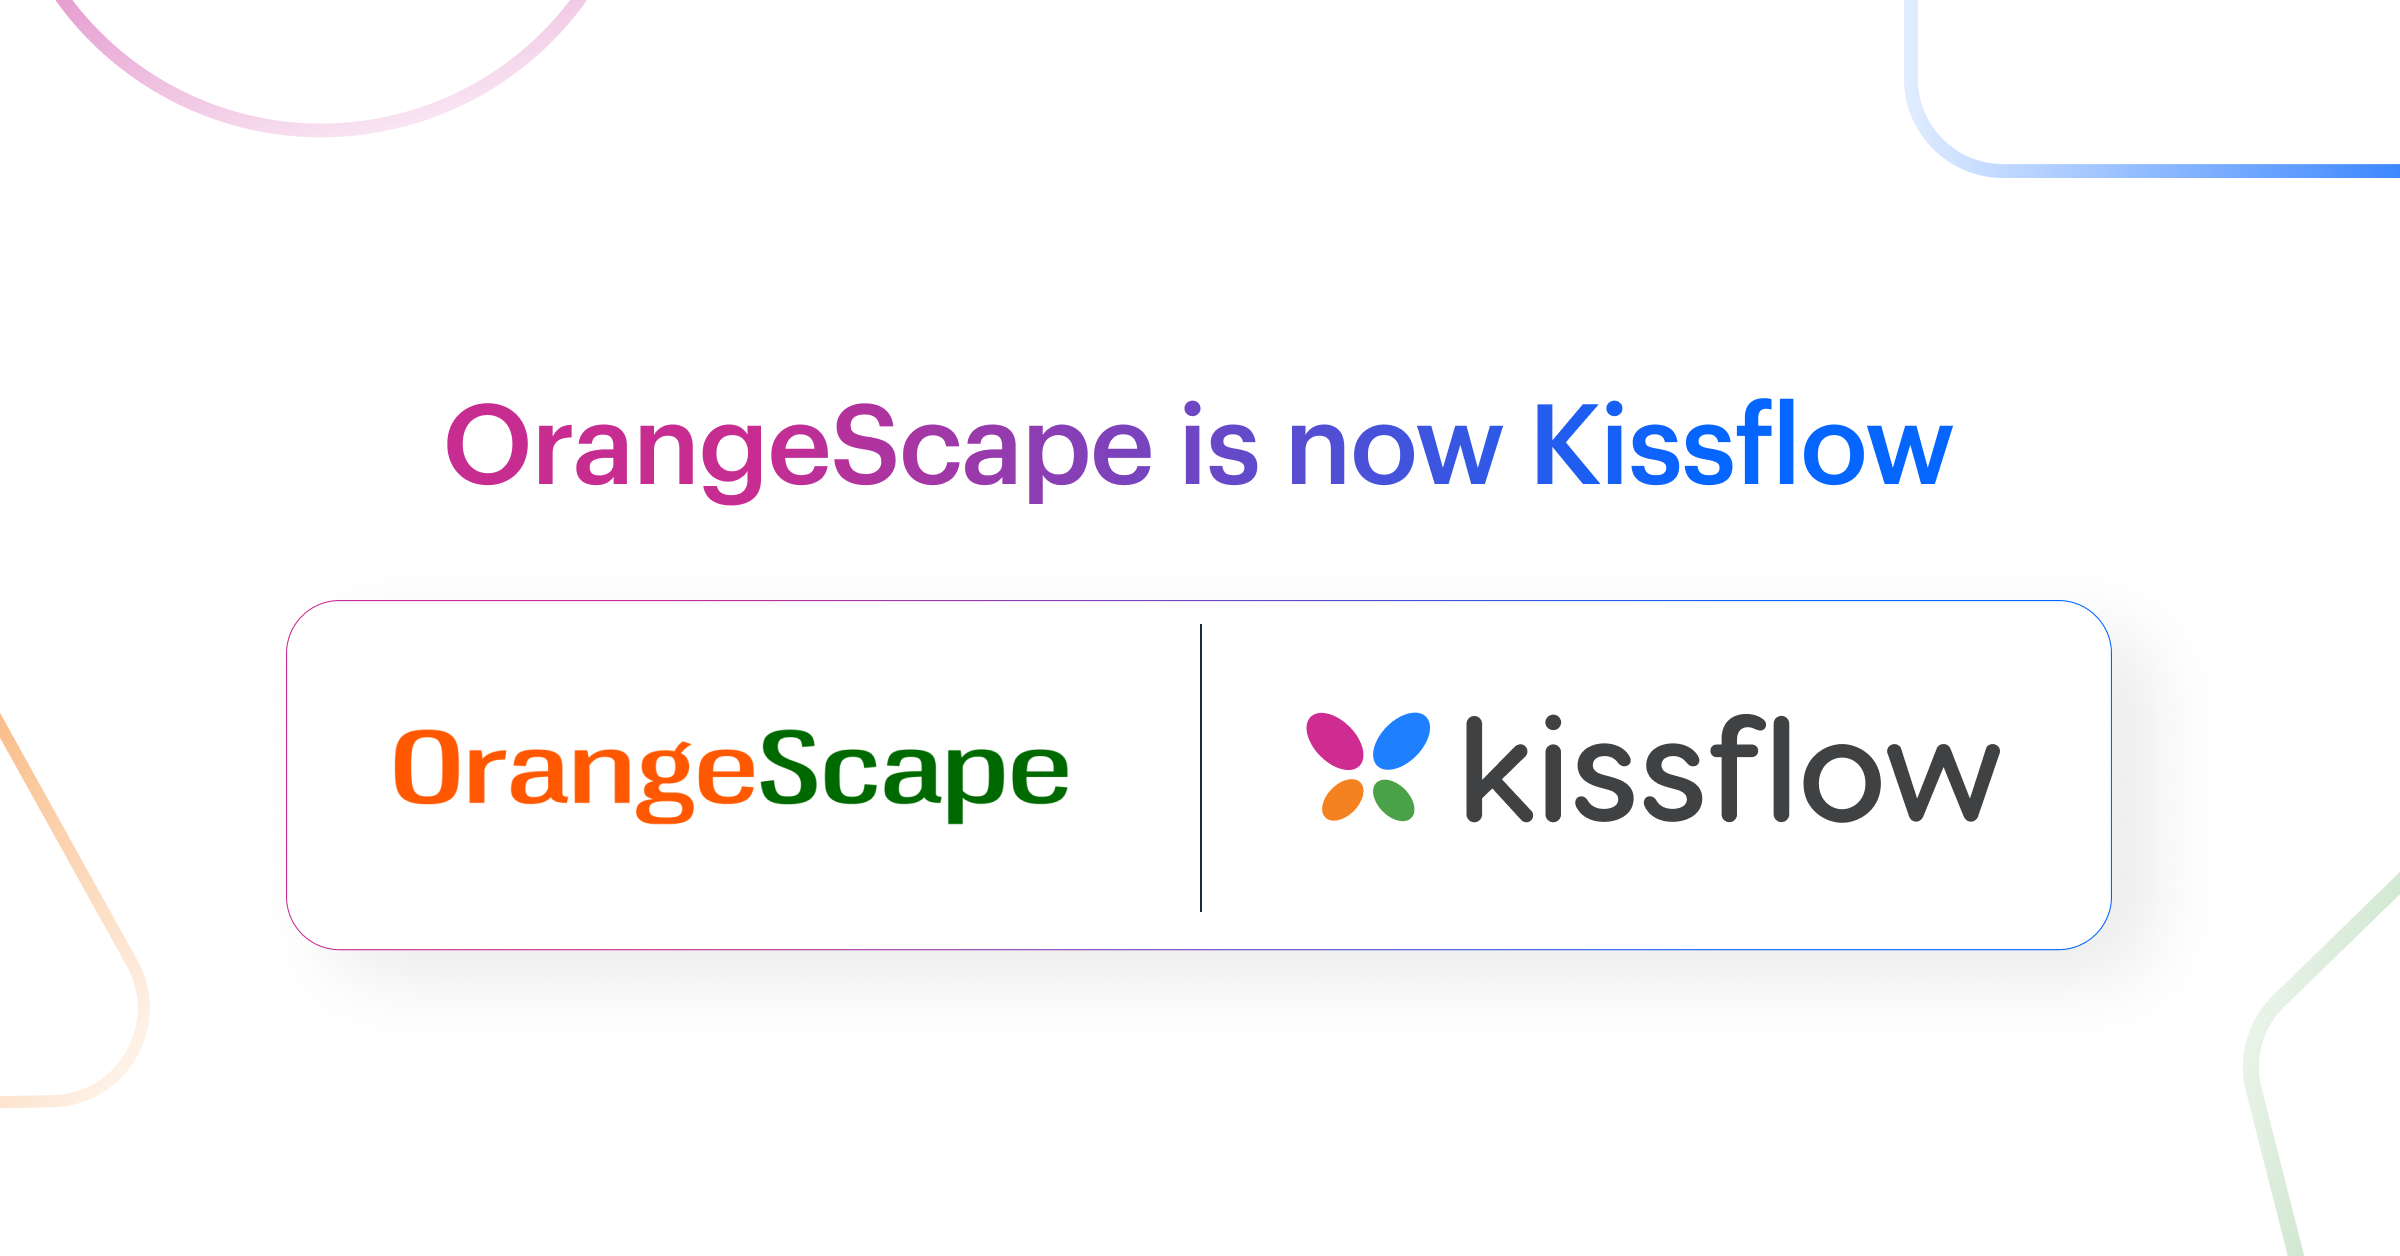 OrangeScape is now Kissflow